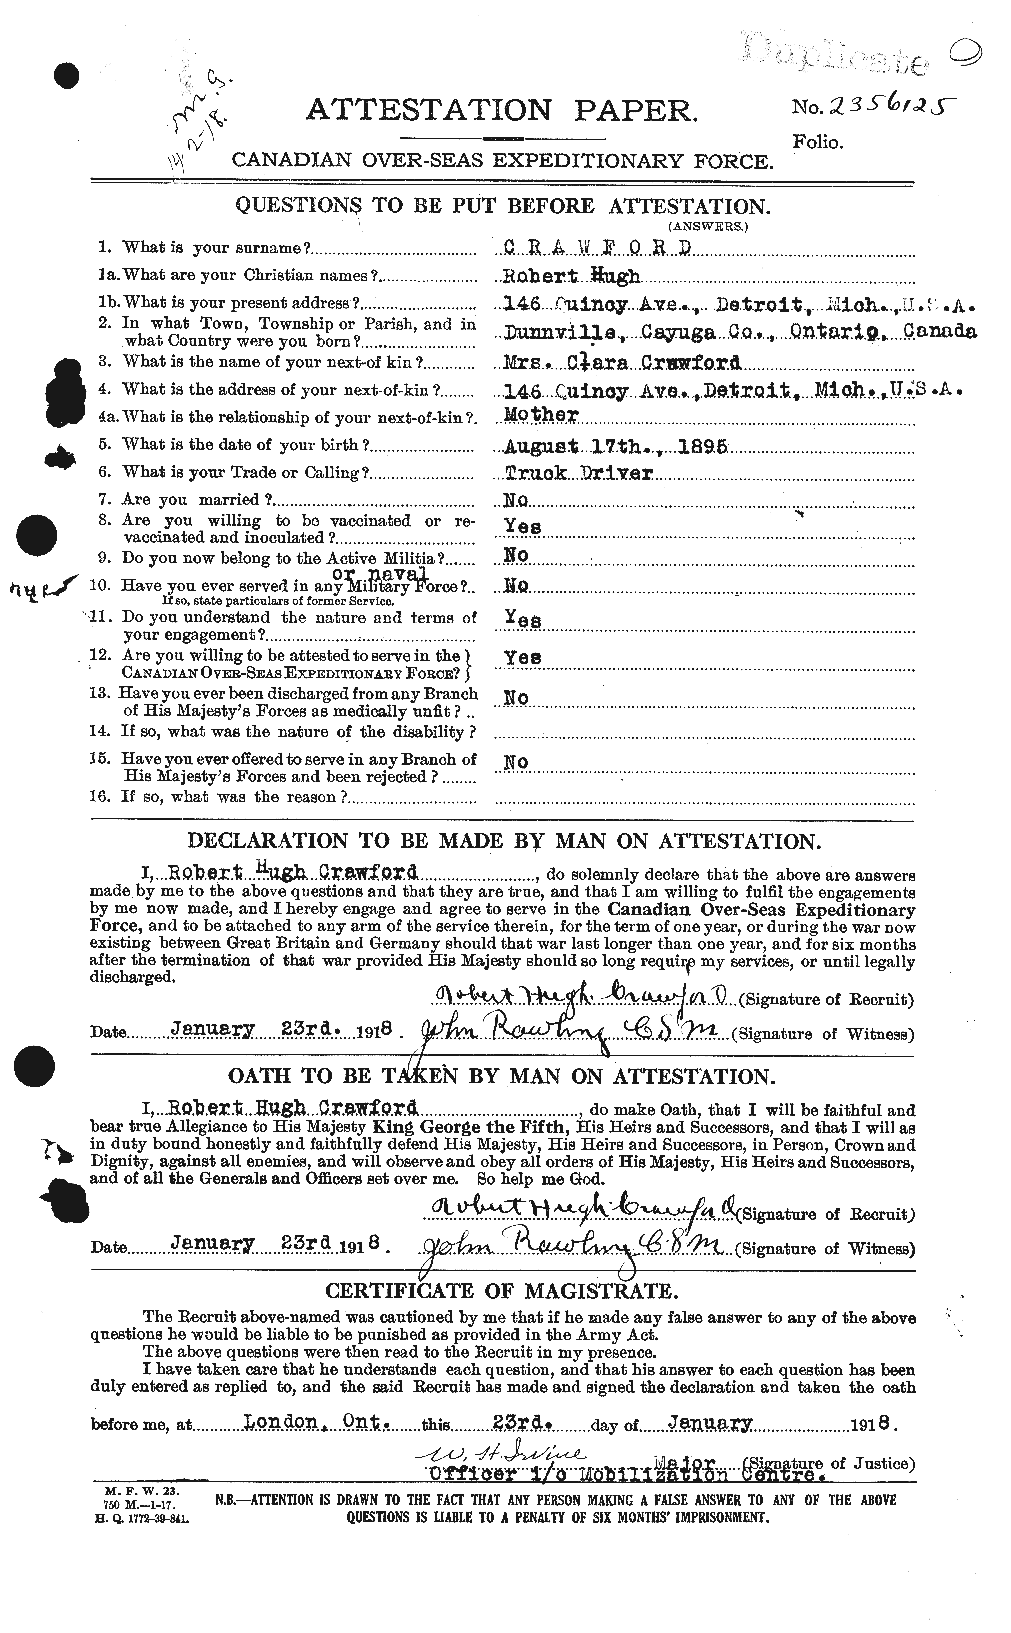 Dossiers du Personnel de la Première Guerre mondiale - CEC 061620a